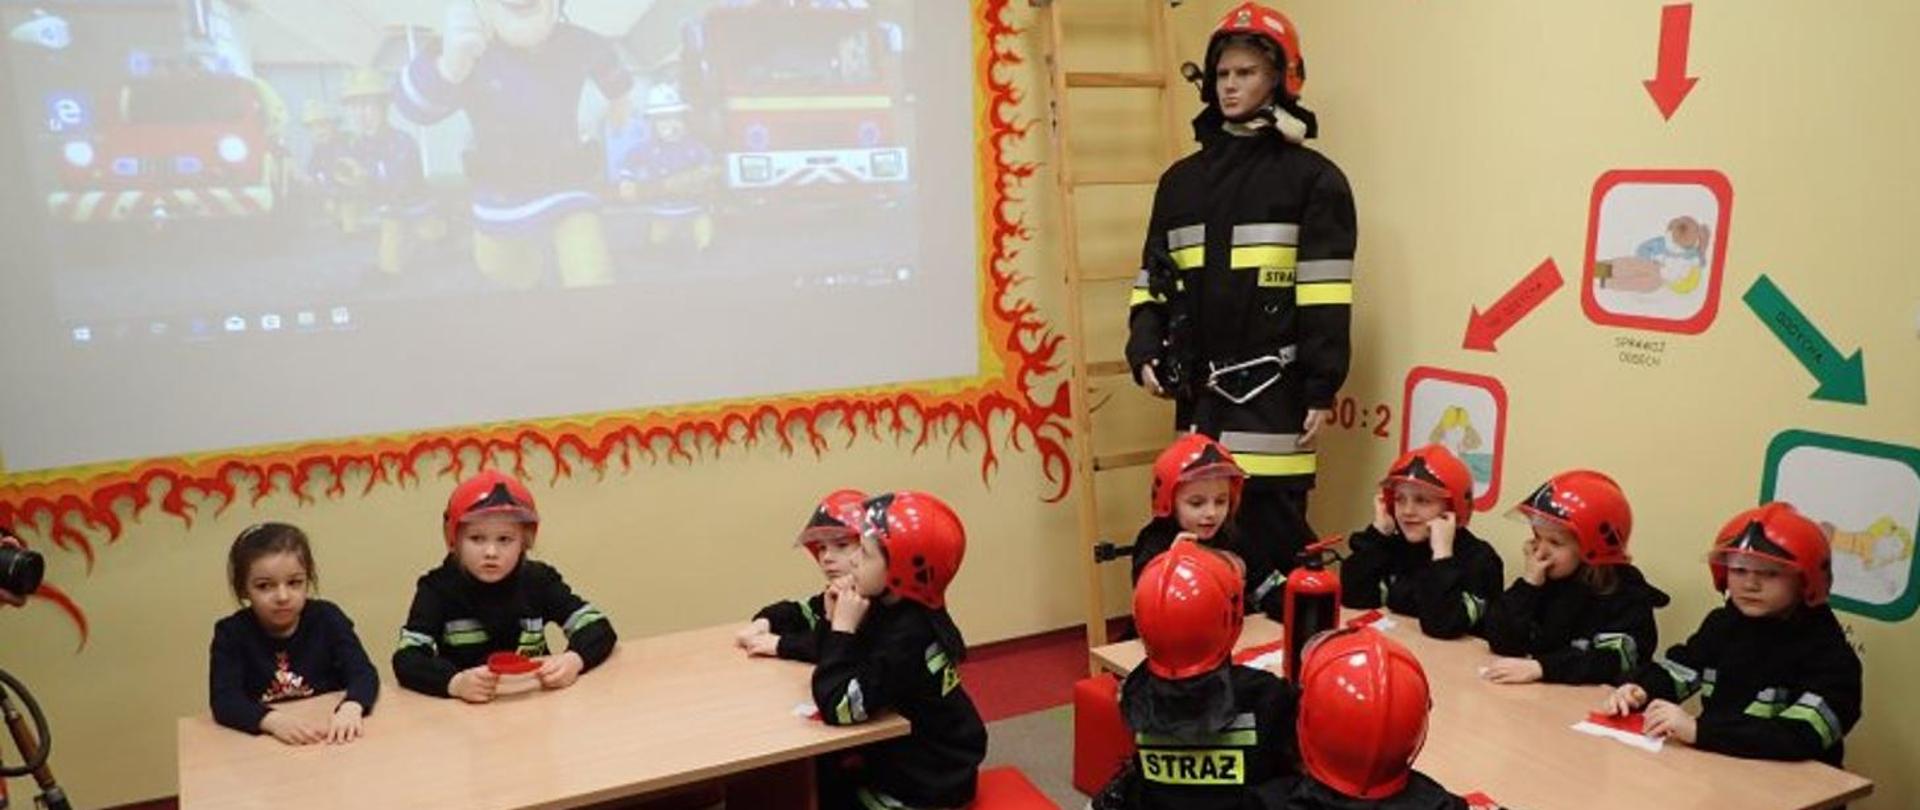 Zdjęcie przedstawia grupę dzieci w czerwonych hełmach strażackich, które siedzą w sali lekcyjnej. W centralnej części sali stoi manekin strażaka w umundurowaniu specjalnym, a obok znajduje się fragment ekranu, na którym wyświetlana jest kreskówka z motywem strażackim.